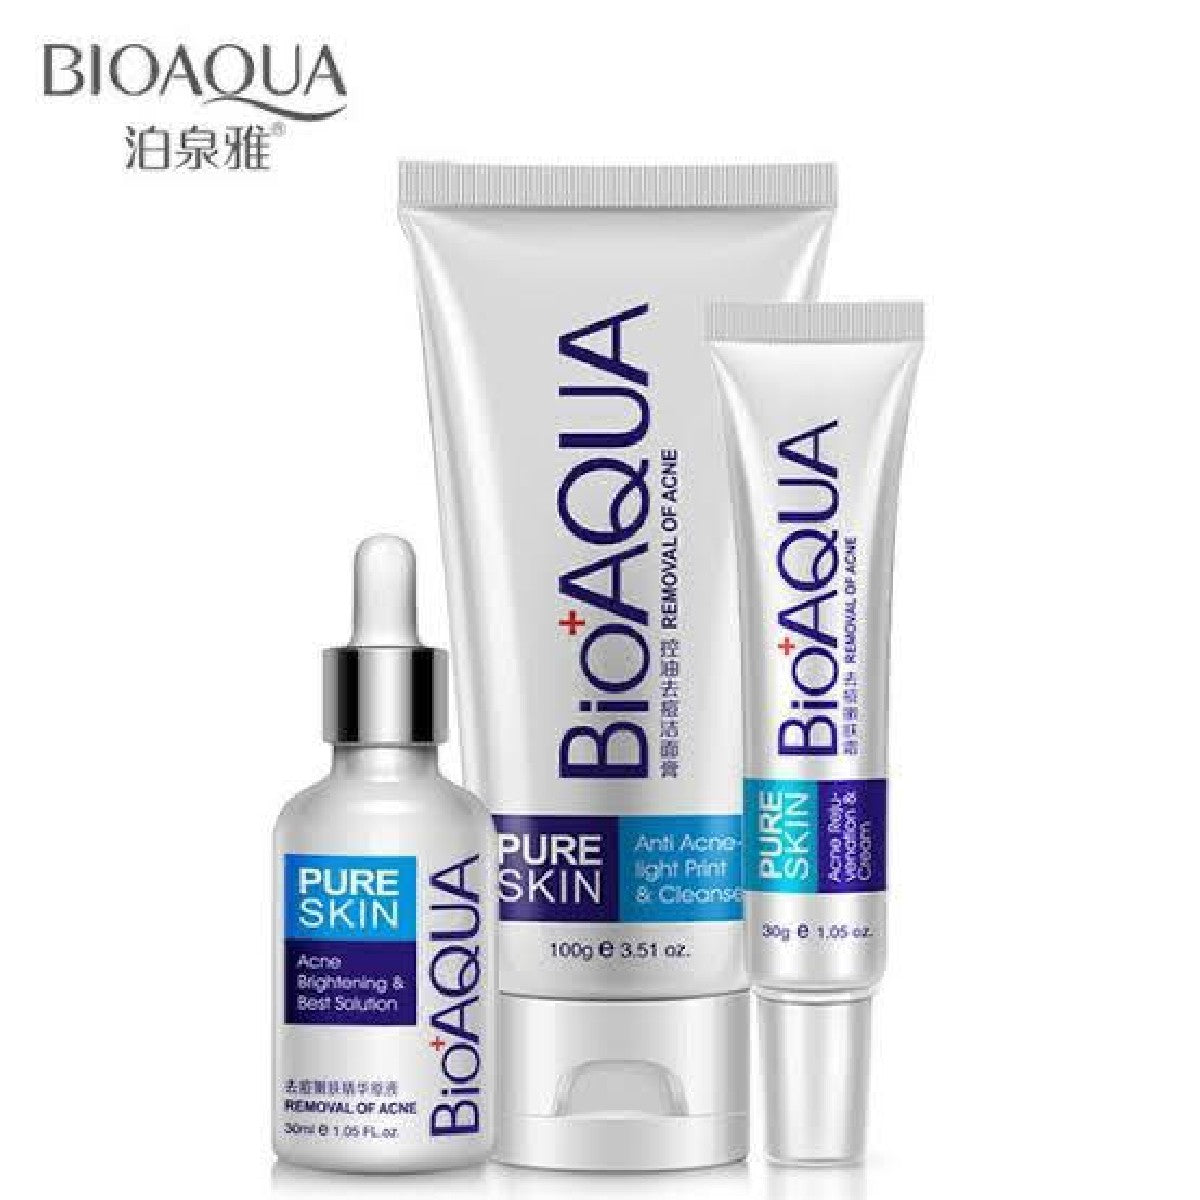 Bioaqua Skin Care Acne Face Treatment Pack of 3